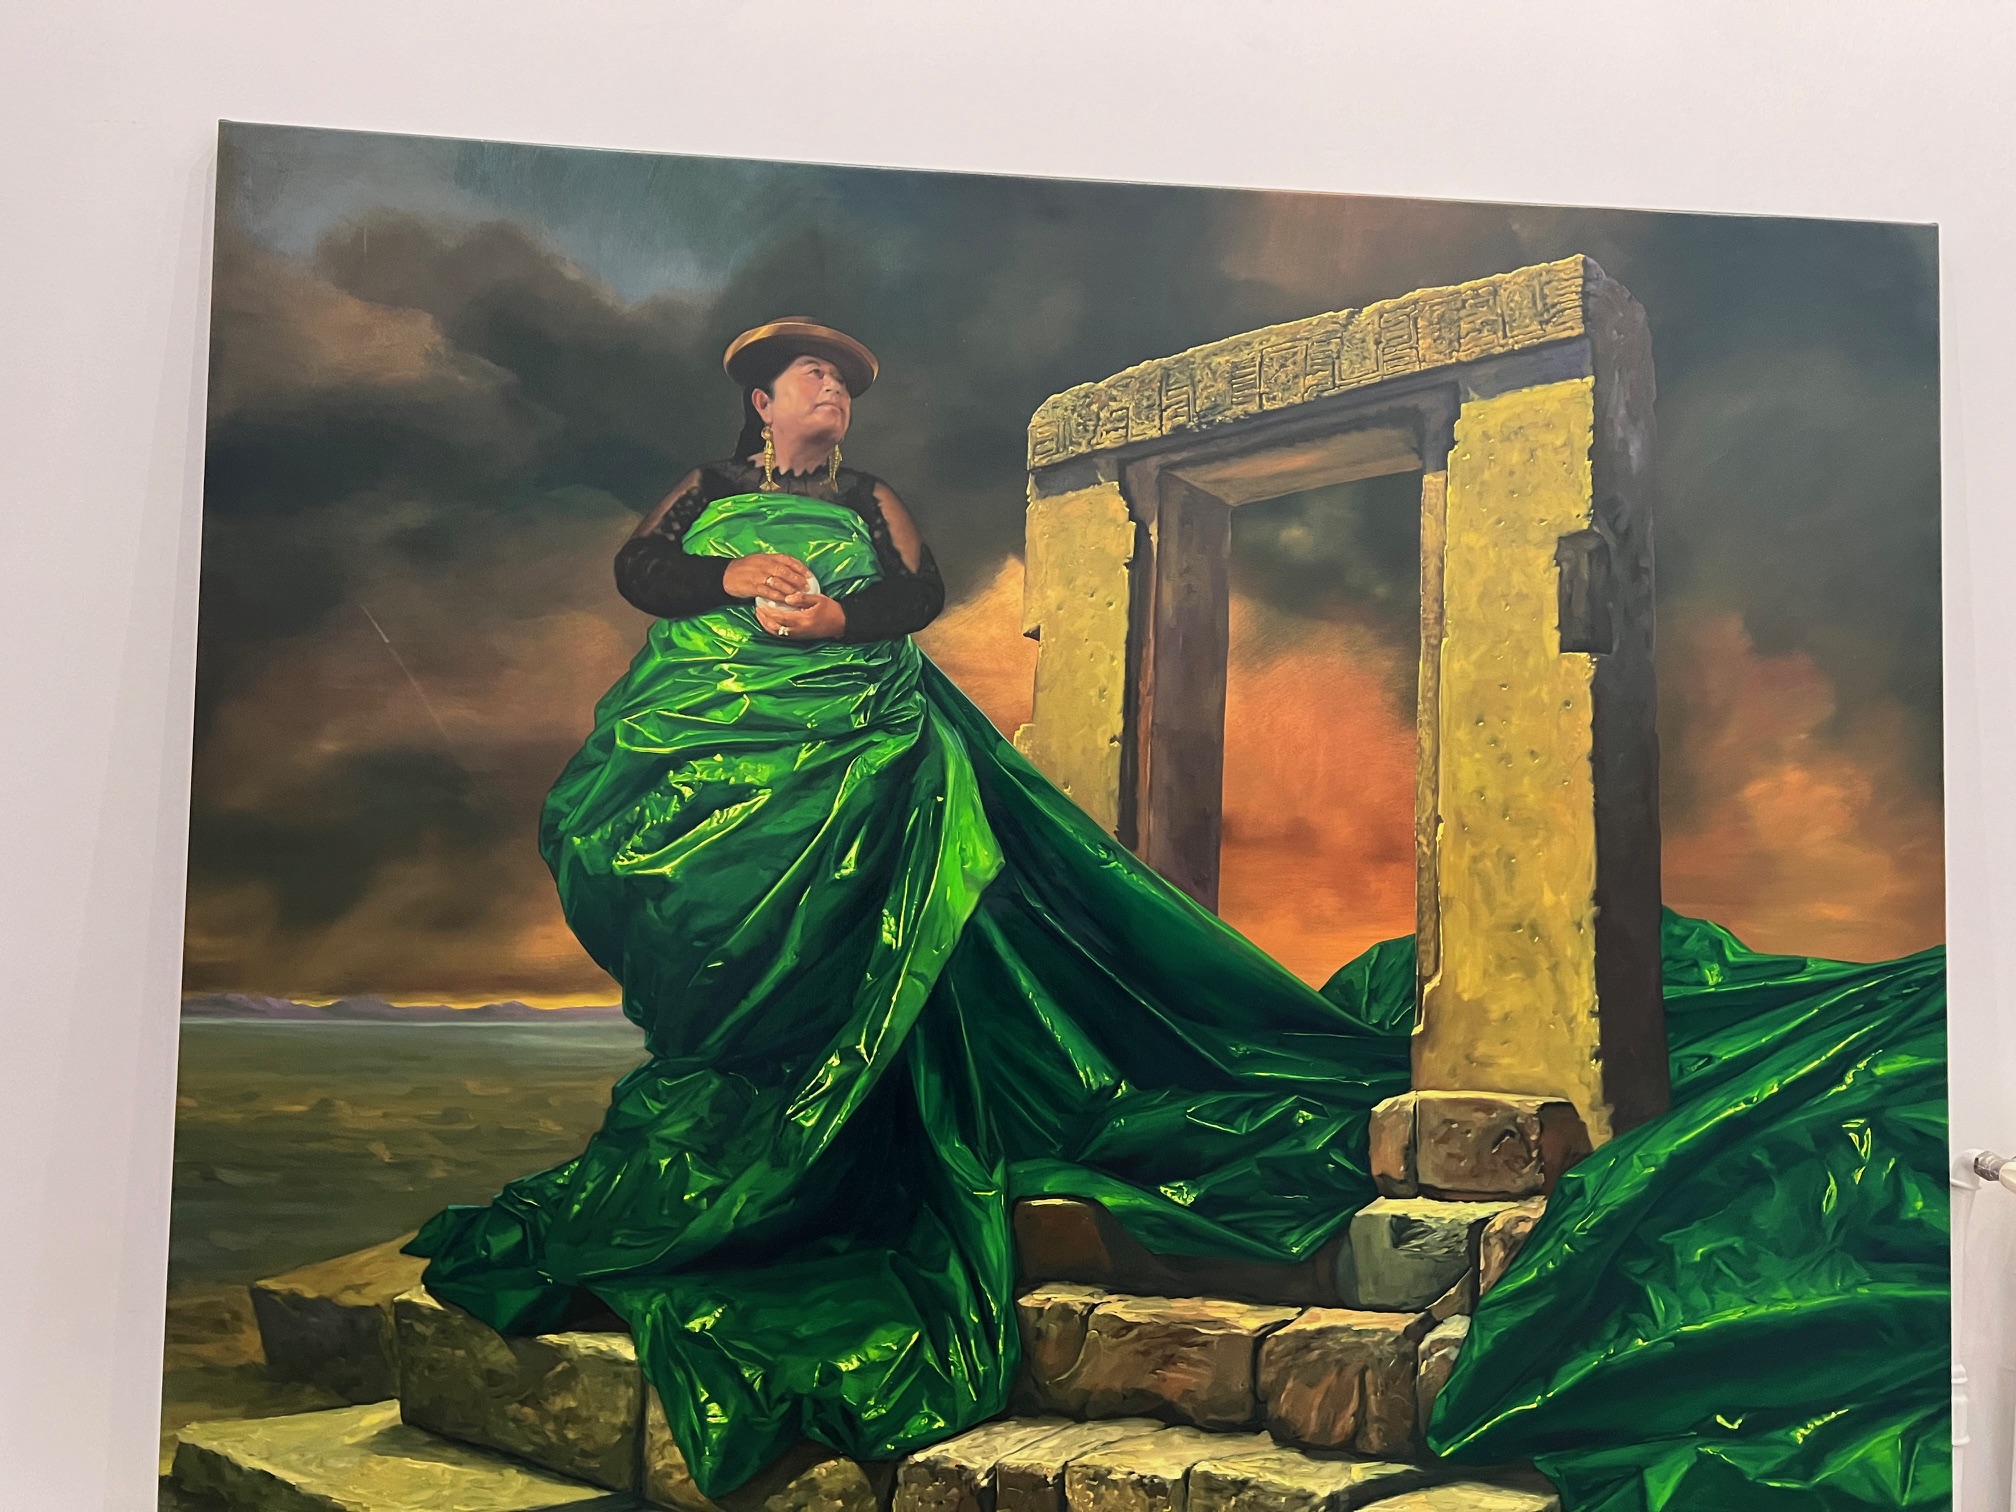 Hija de la Luna (2023), une oeuvre du peintre Cristian Laime représentant une femme bolivienne dans une robe de plastique verte dont les pans tombent sur une ruine de pierre.